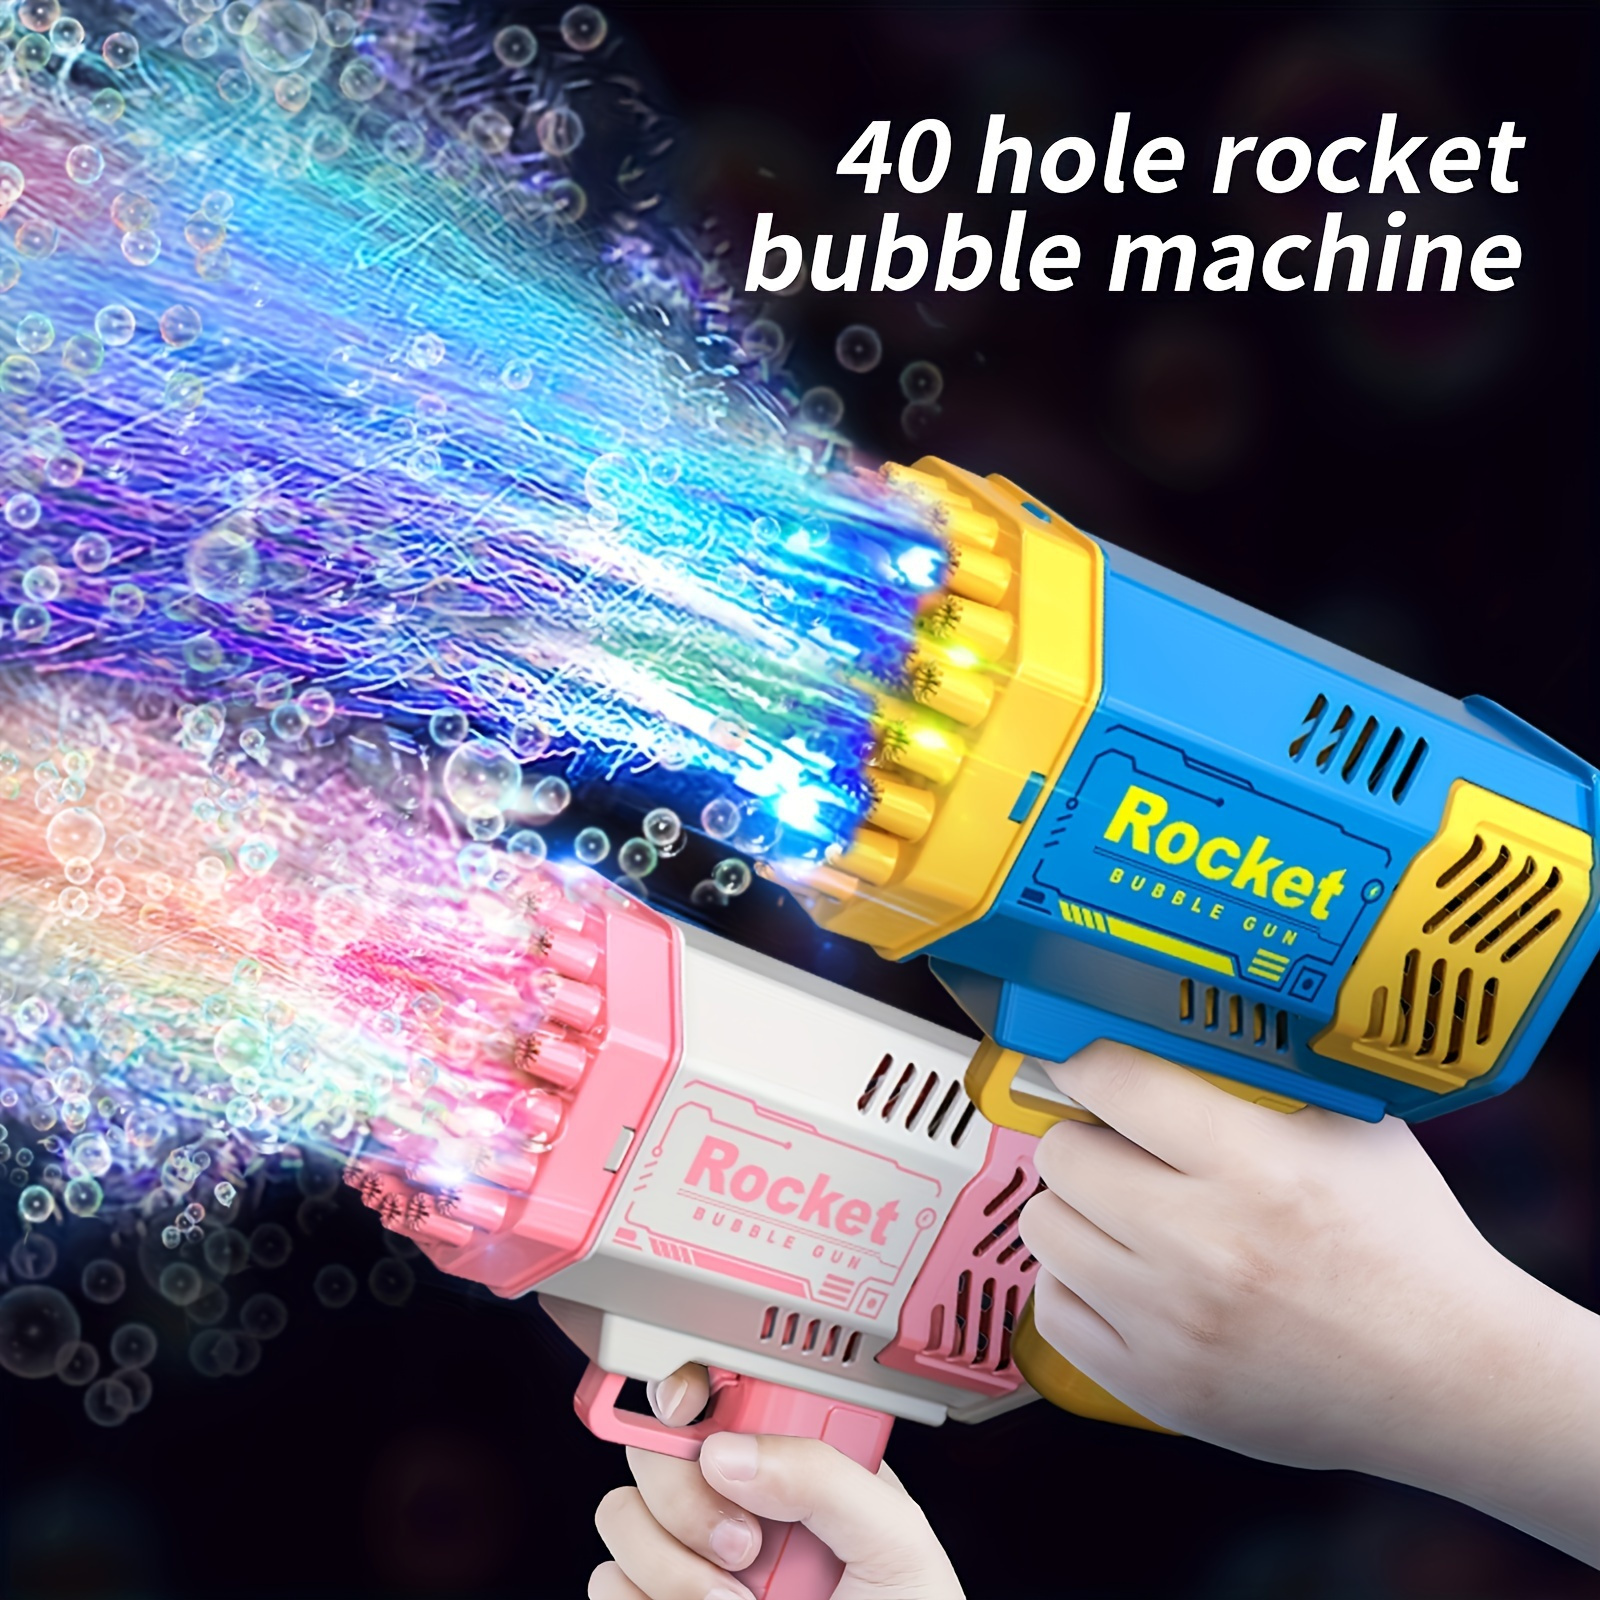 Lot de 48 bulles de savon pour enfants - Jouet - Mini bulles colorées -  Pour jardin, petit cadeau, anniversaire d'enfant, carnaval (A)